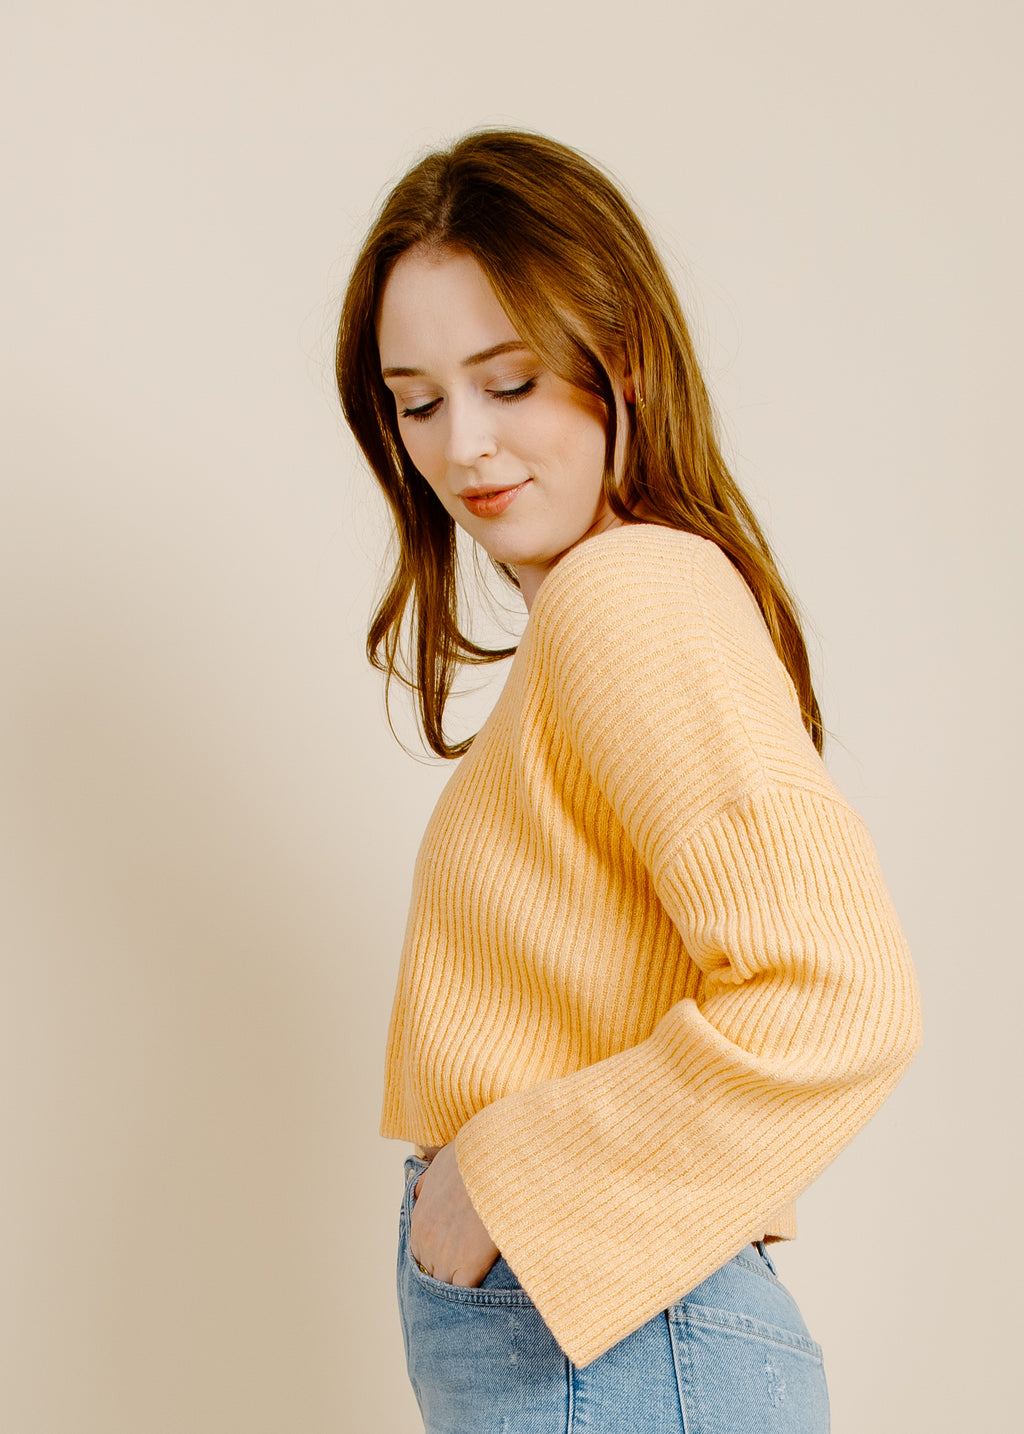 Margo Peach Sweater